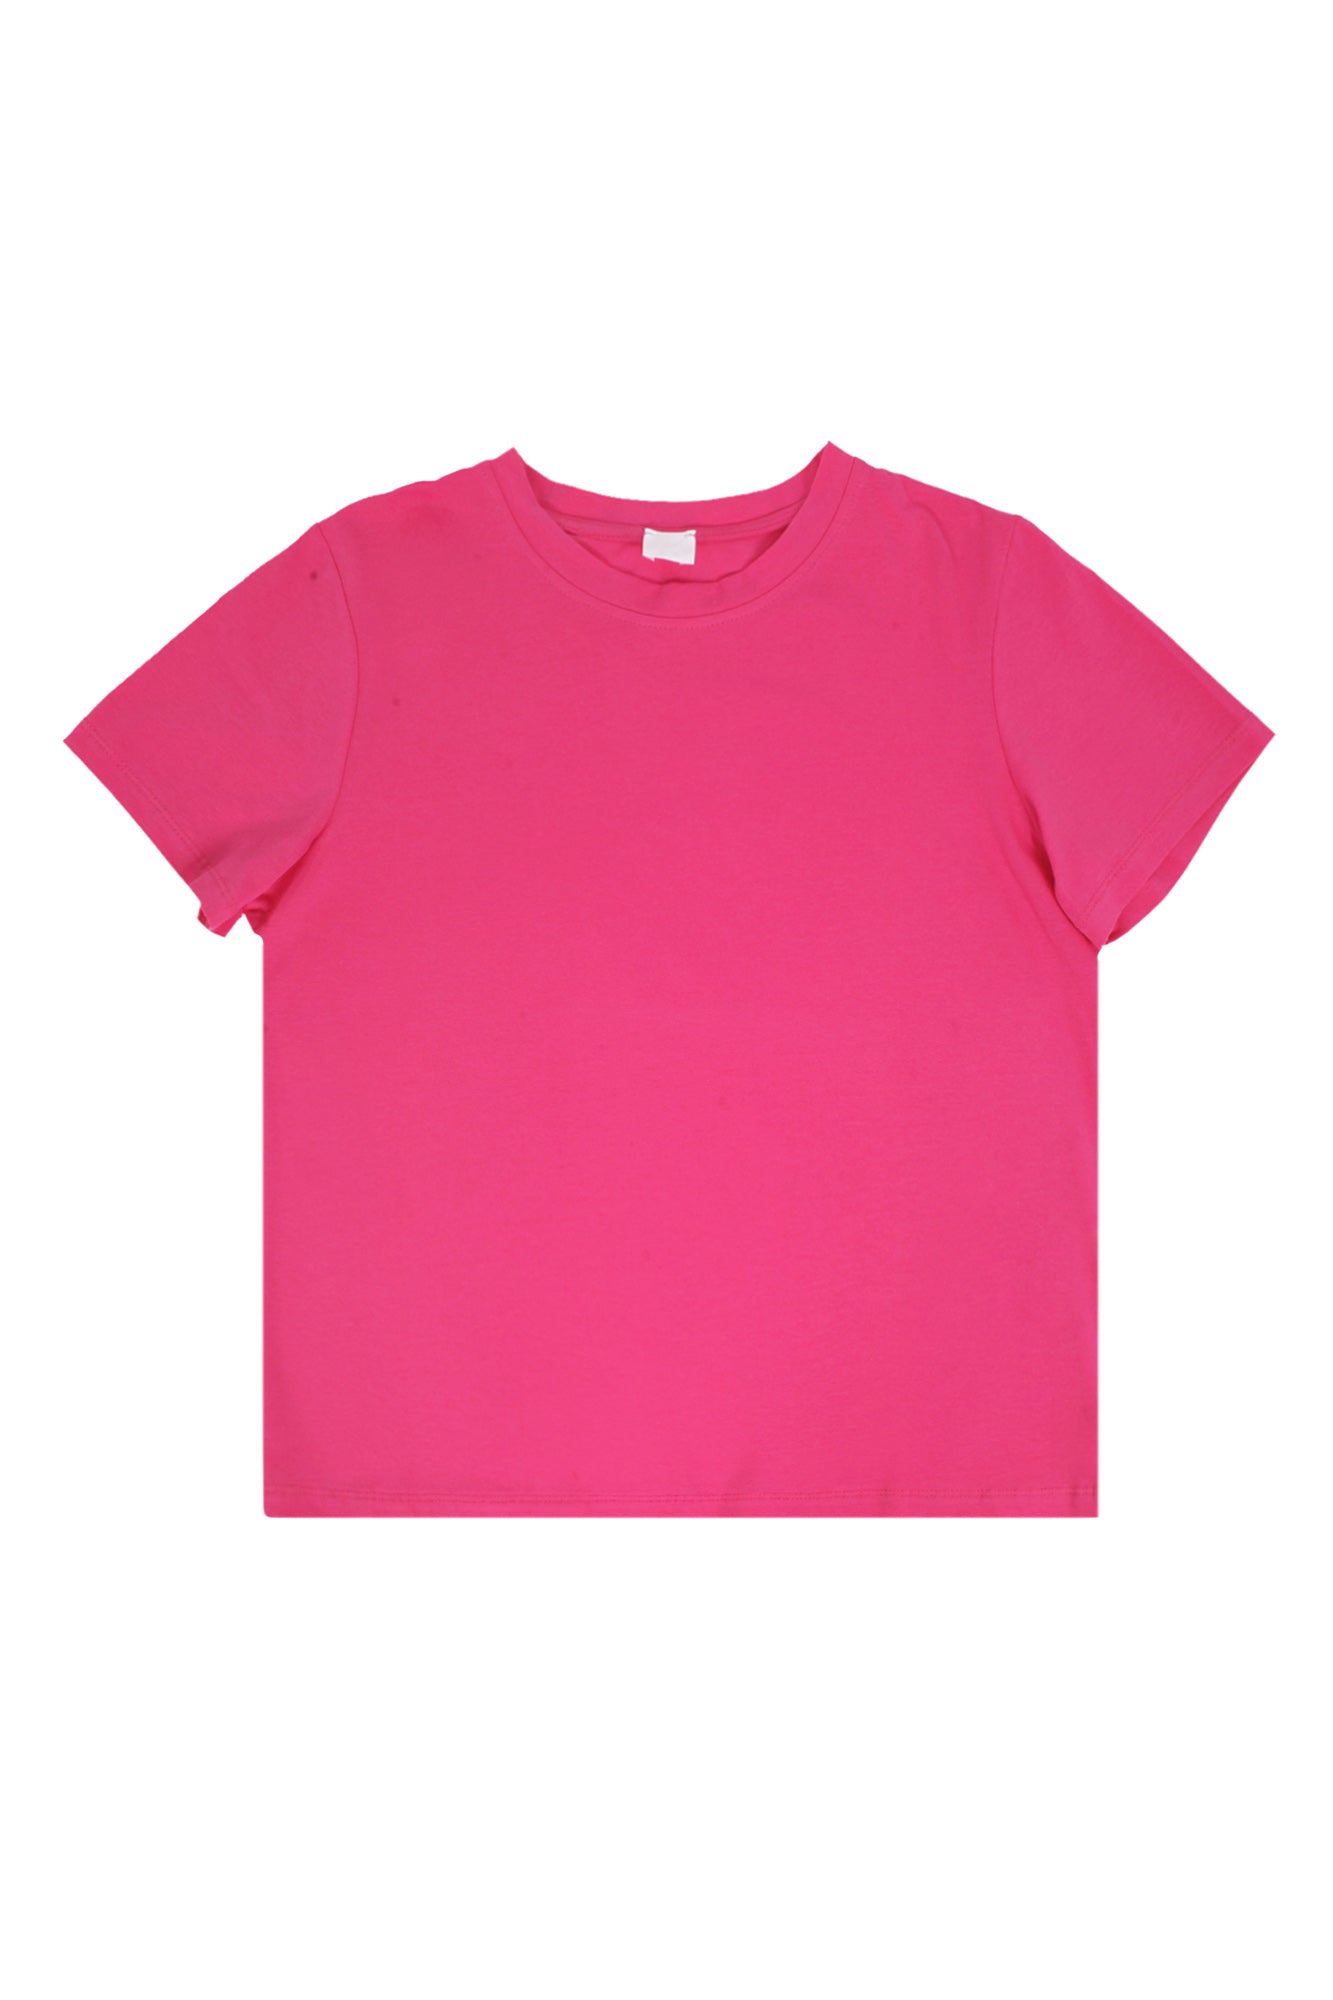 La Femme Blanche - T-shirt - 431583 - Fuxia